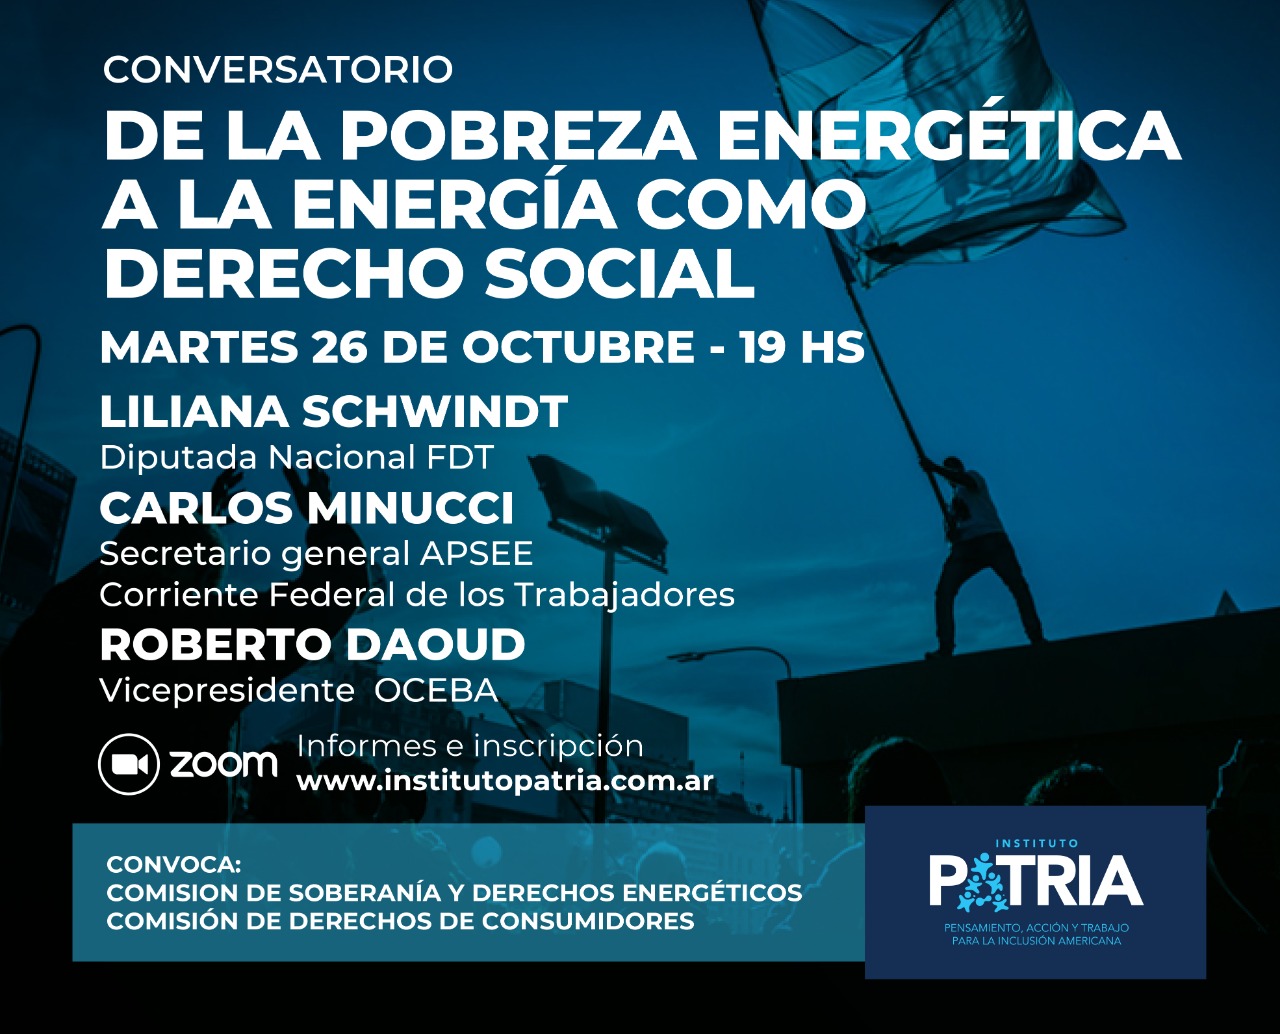 Conversatorio  “De la pobreza energética a la energía como derecho”